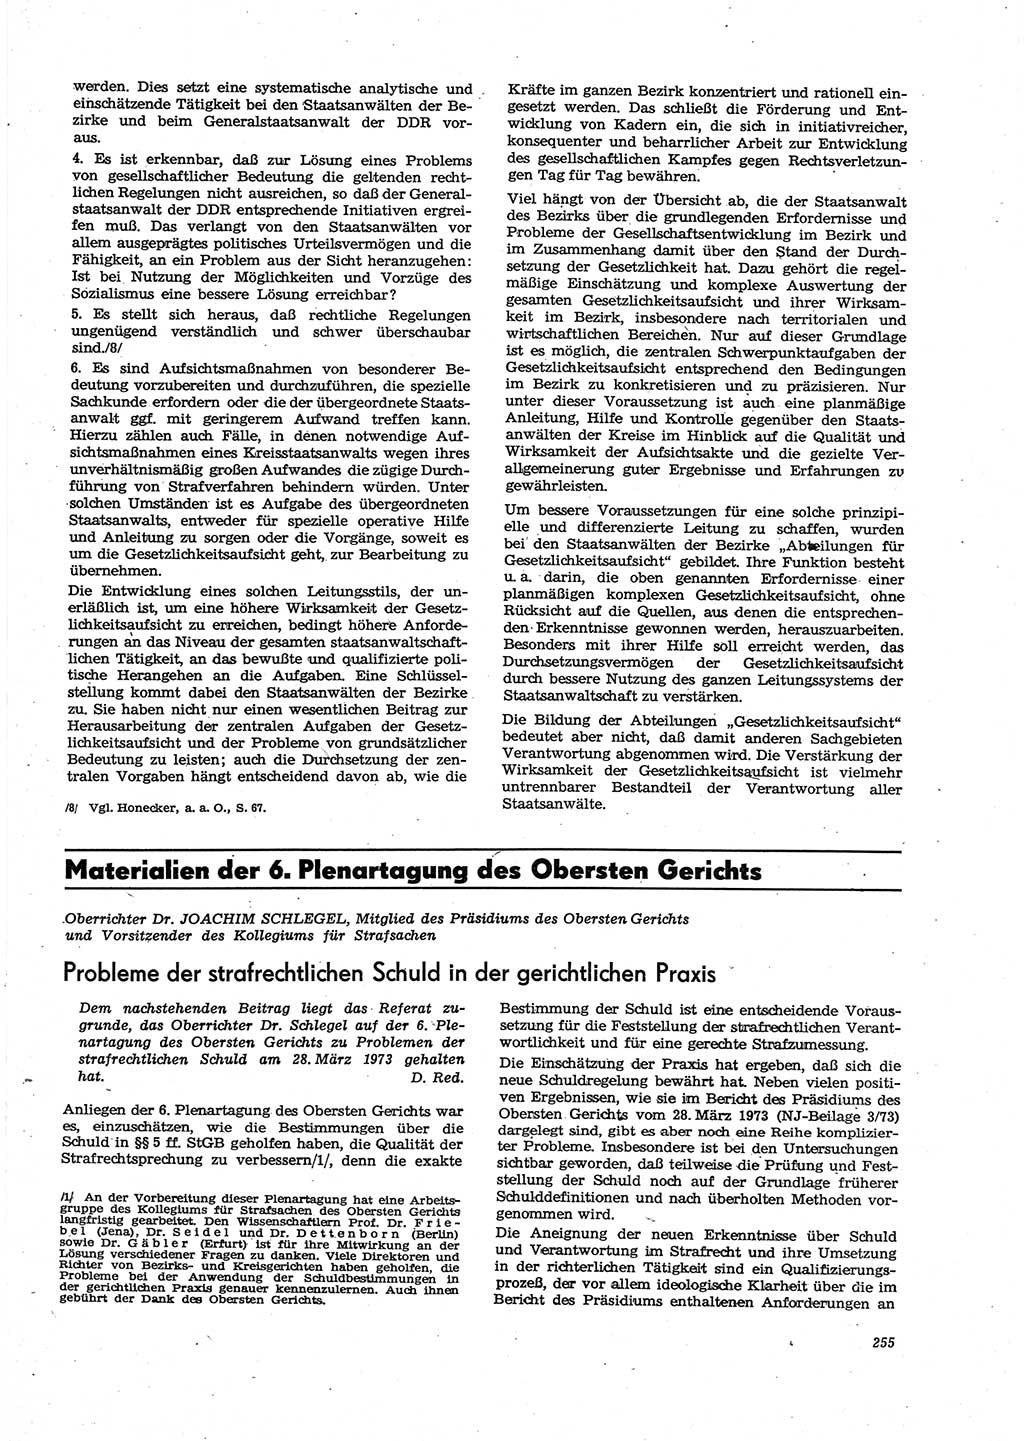 Neue Justiz (NJ), Zeitschrift für Recht und Rechtswissenschaft [Deutsche Demokratische Republik (DDR)], 27. Jahrgang 1973, Seite 255 (NJ DDR 1973, S. 255)